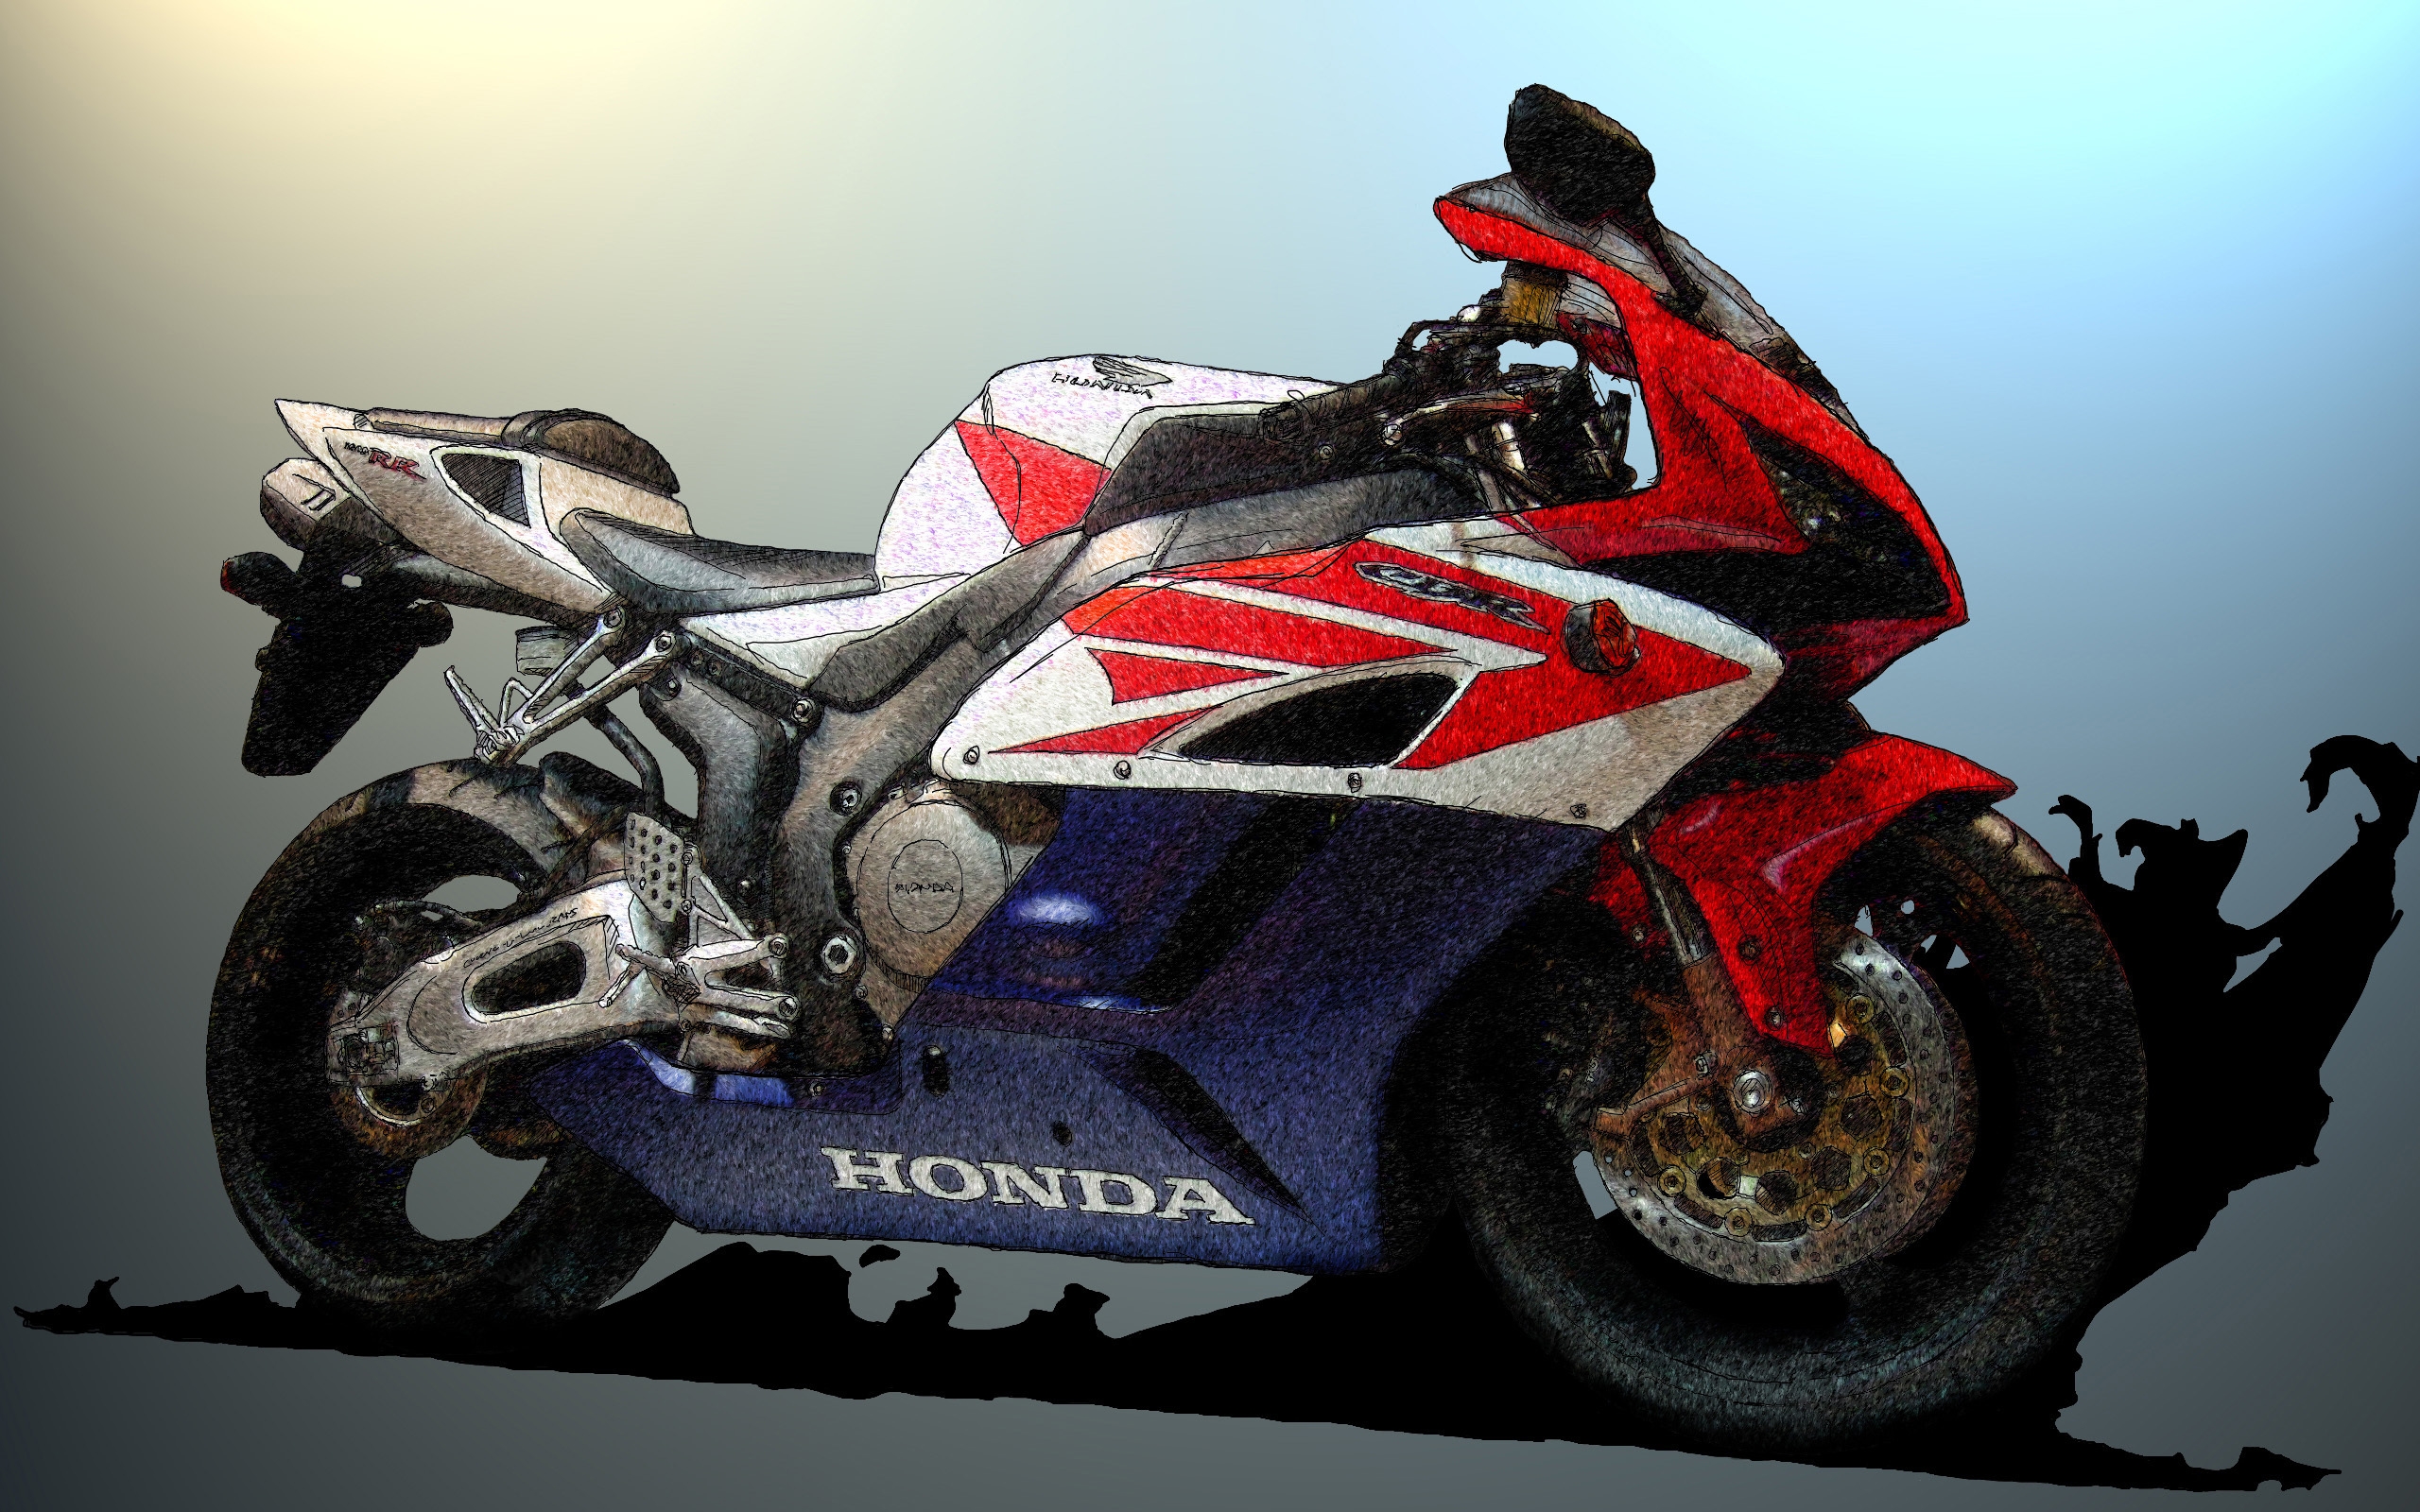 Honda CBR Sketch for 2560 x 1600 widescreen resolution